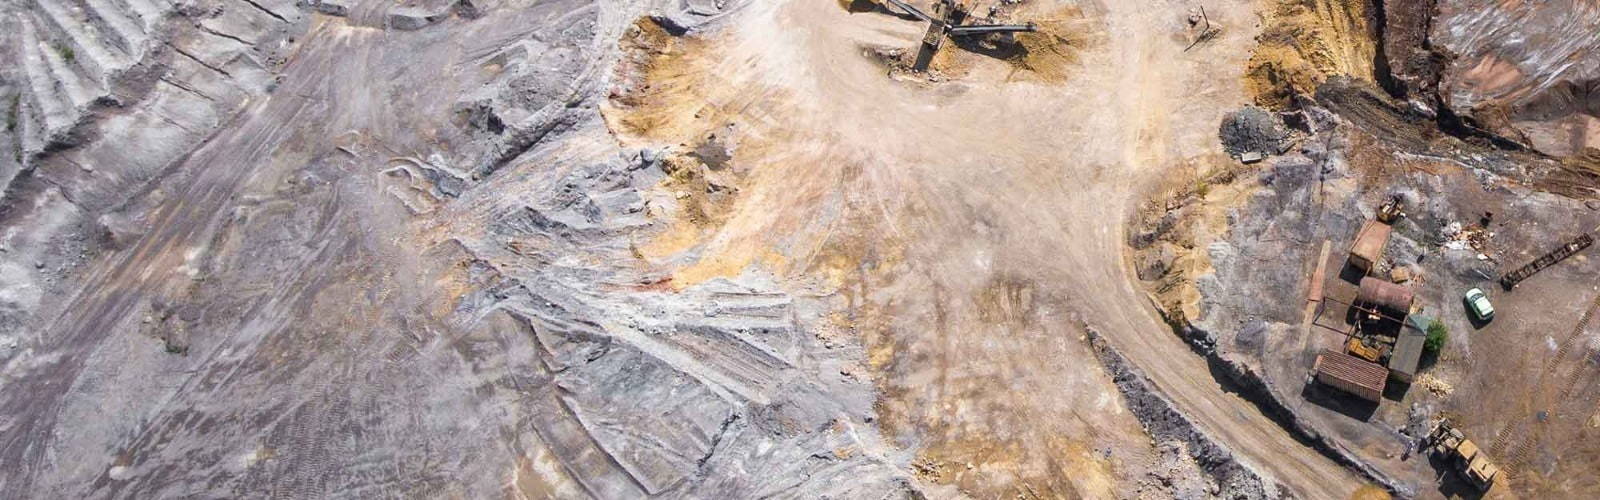 mining site